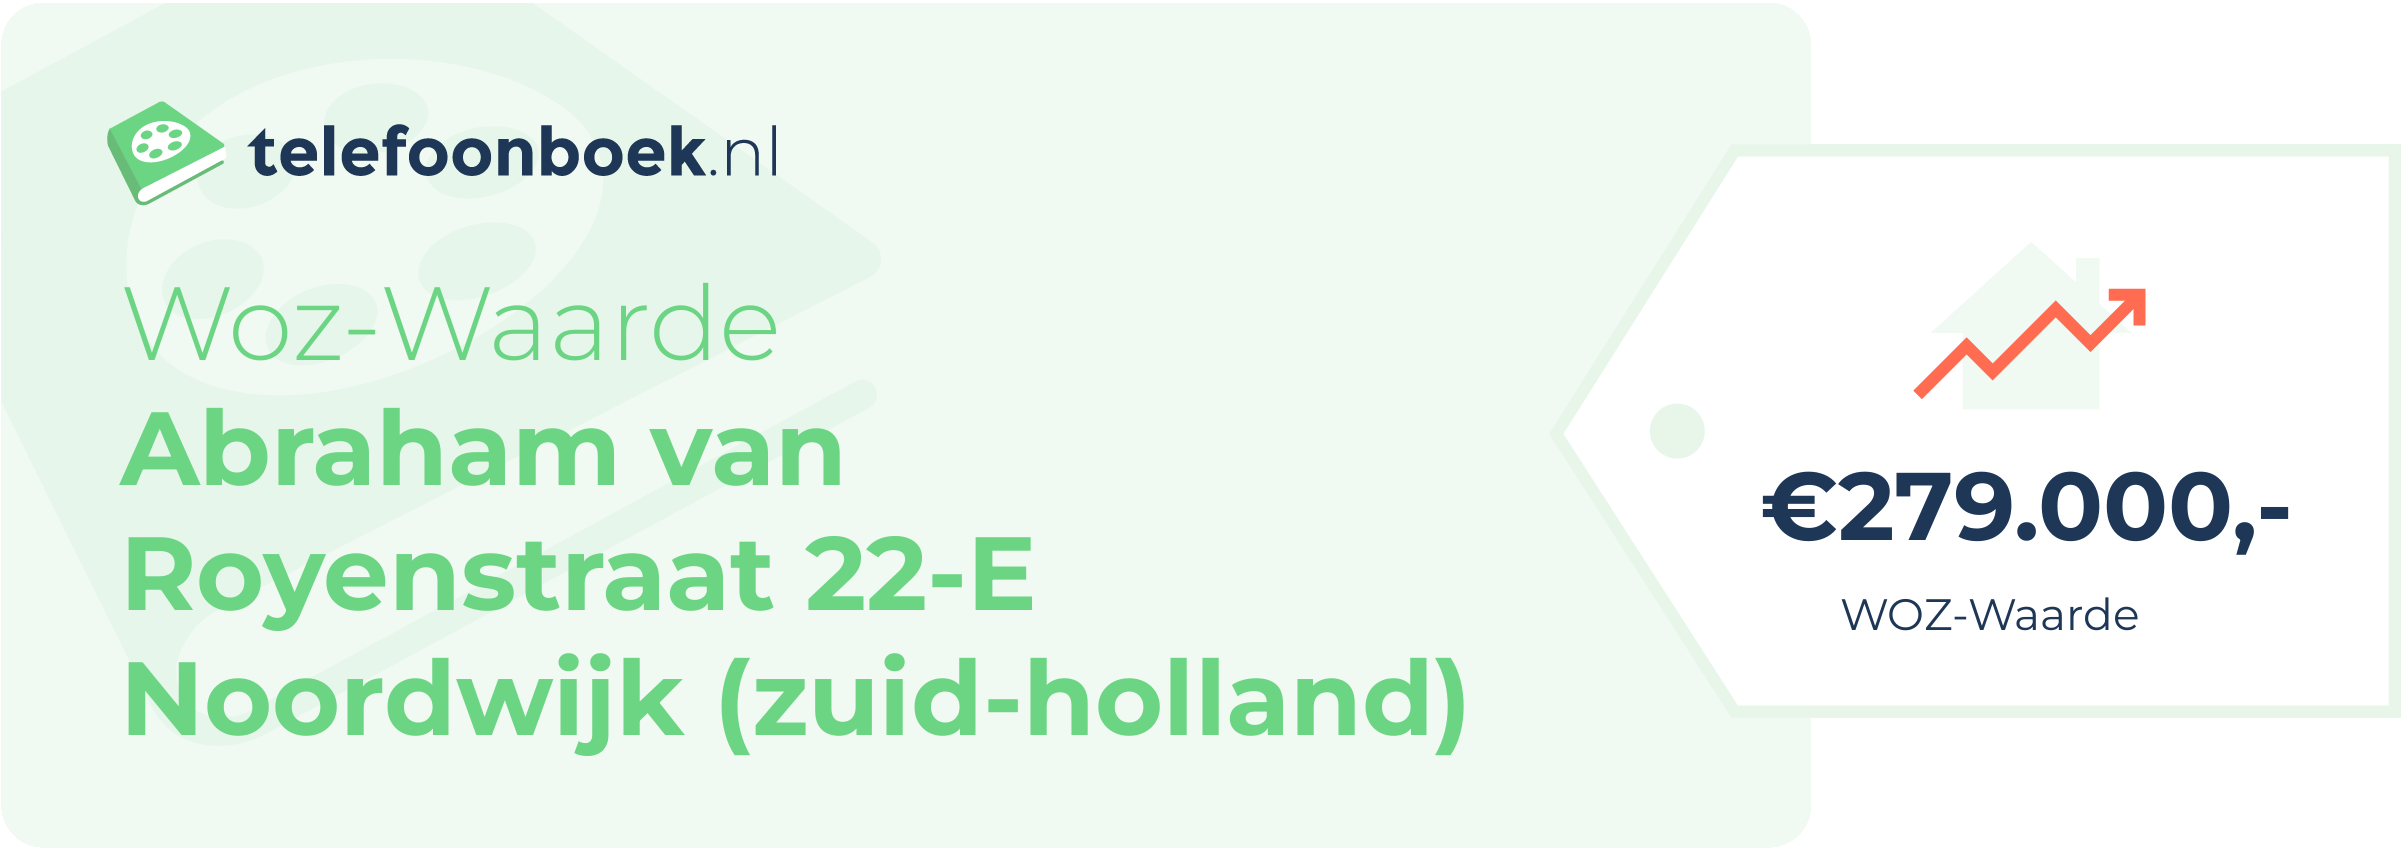 WOZ-waarde Abraham Van Royenstraat 22-E Noordwijk (Zuid-Holland)